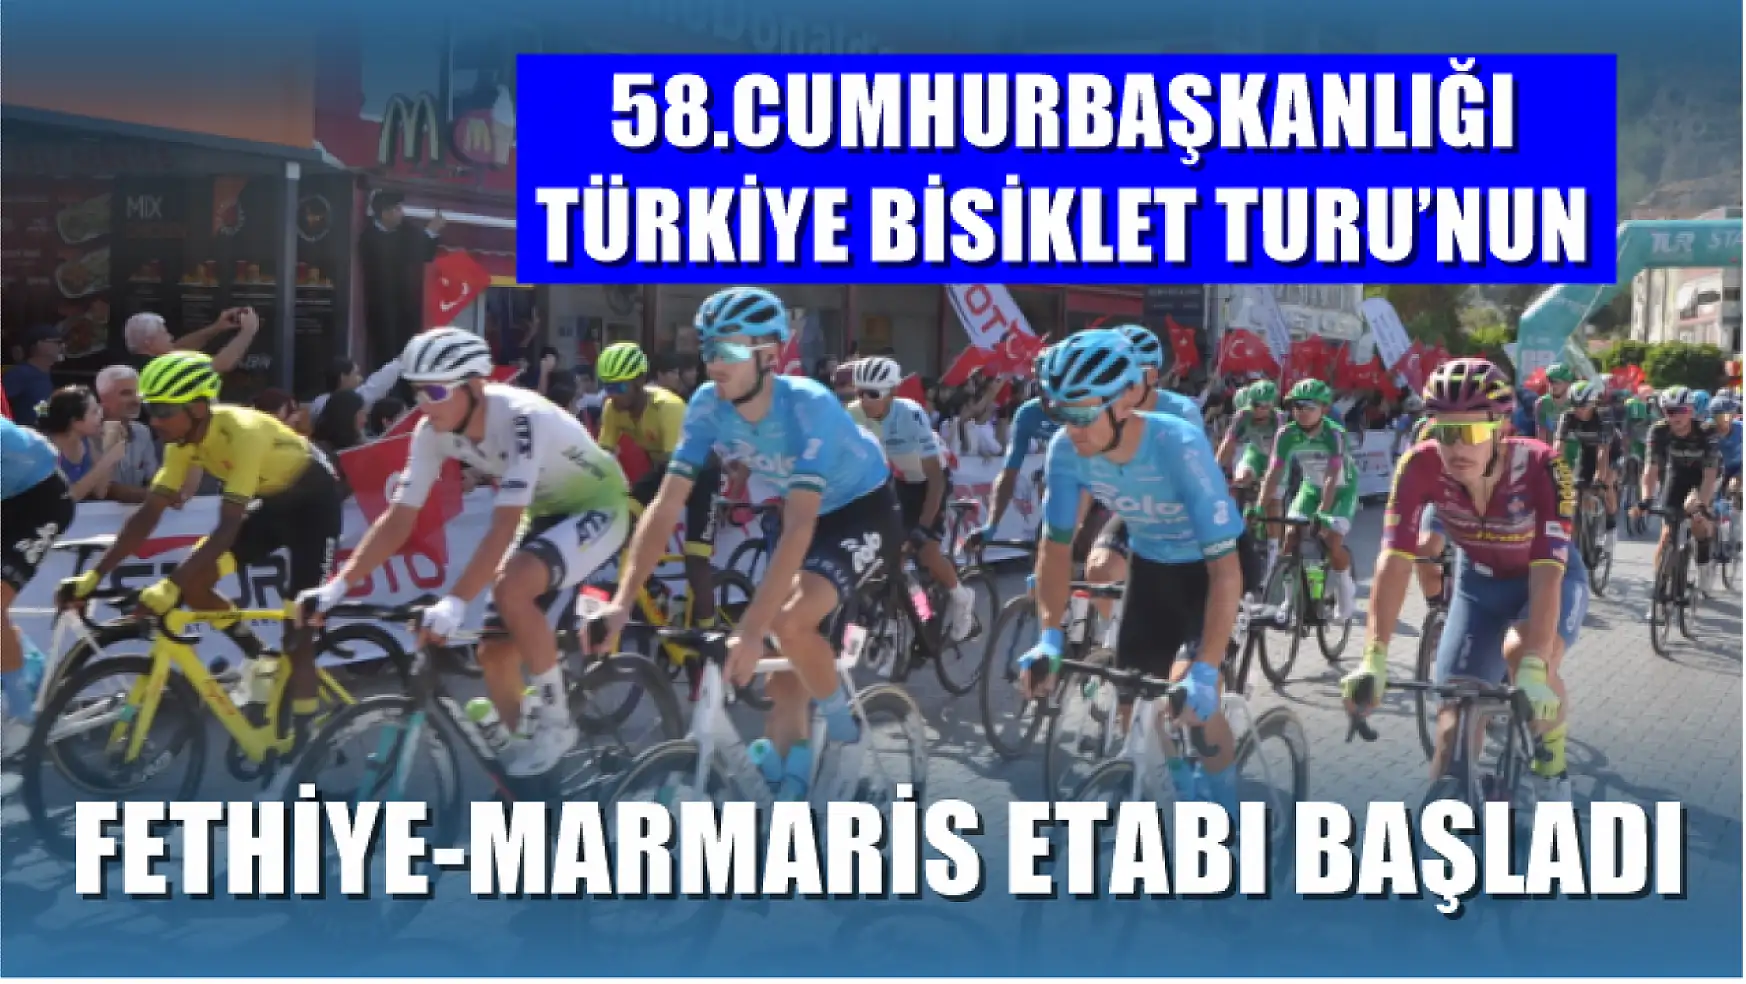 58.Cumhurbaşkanlığı Türkiye Bisiklet Turu'nun Fethiye-Marmaris Etabı Başladı